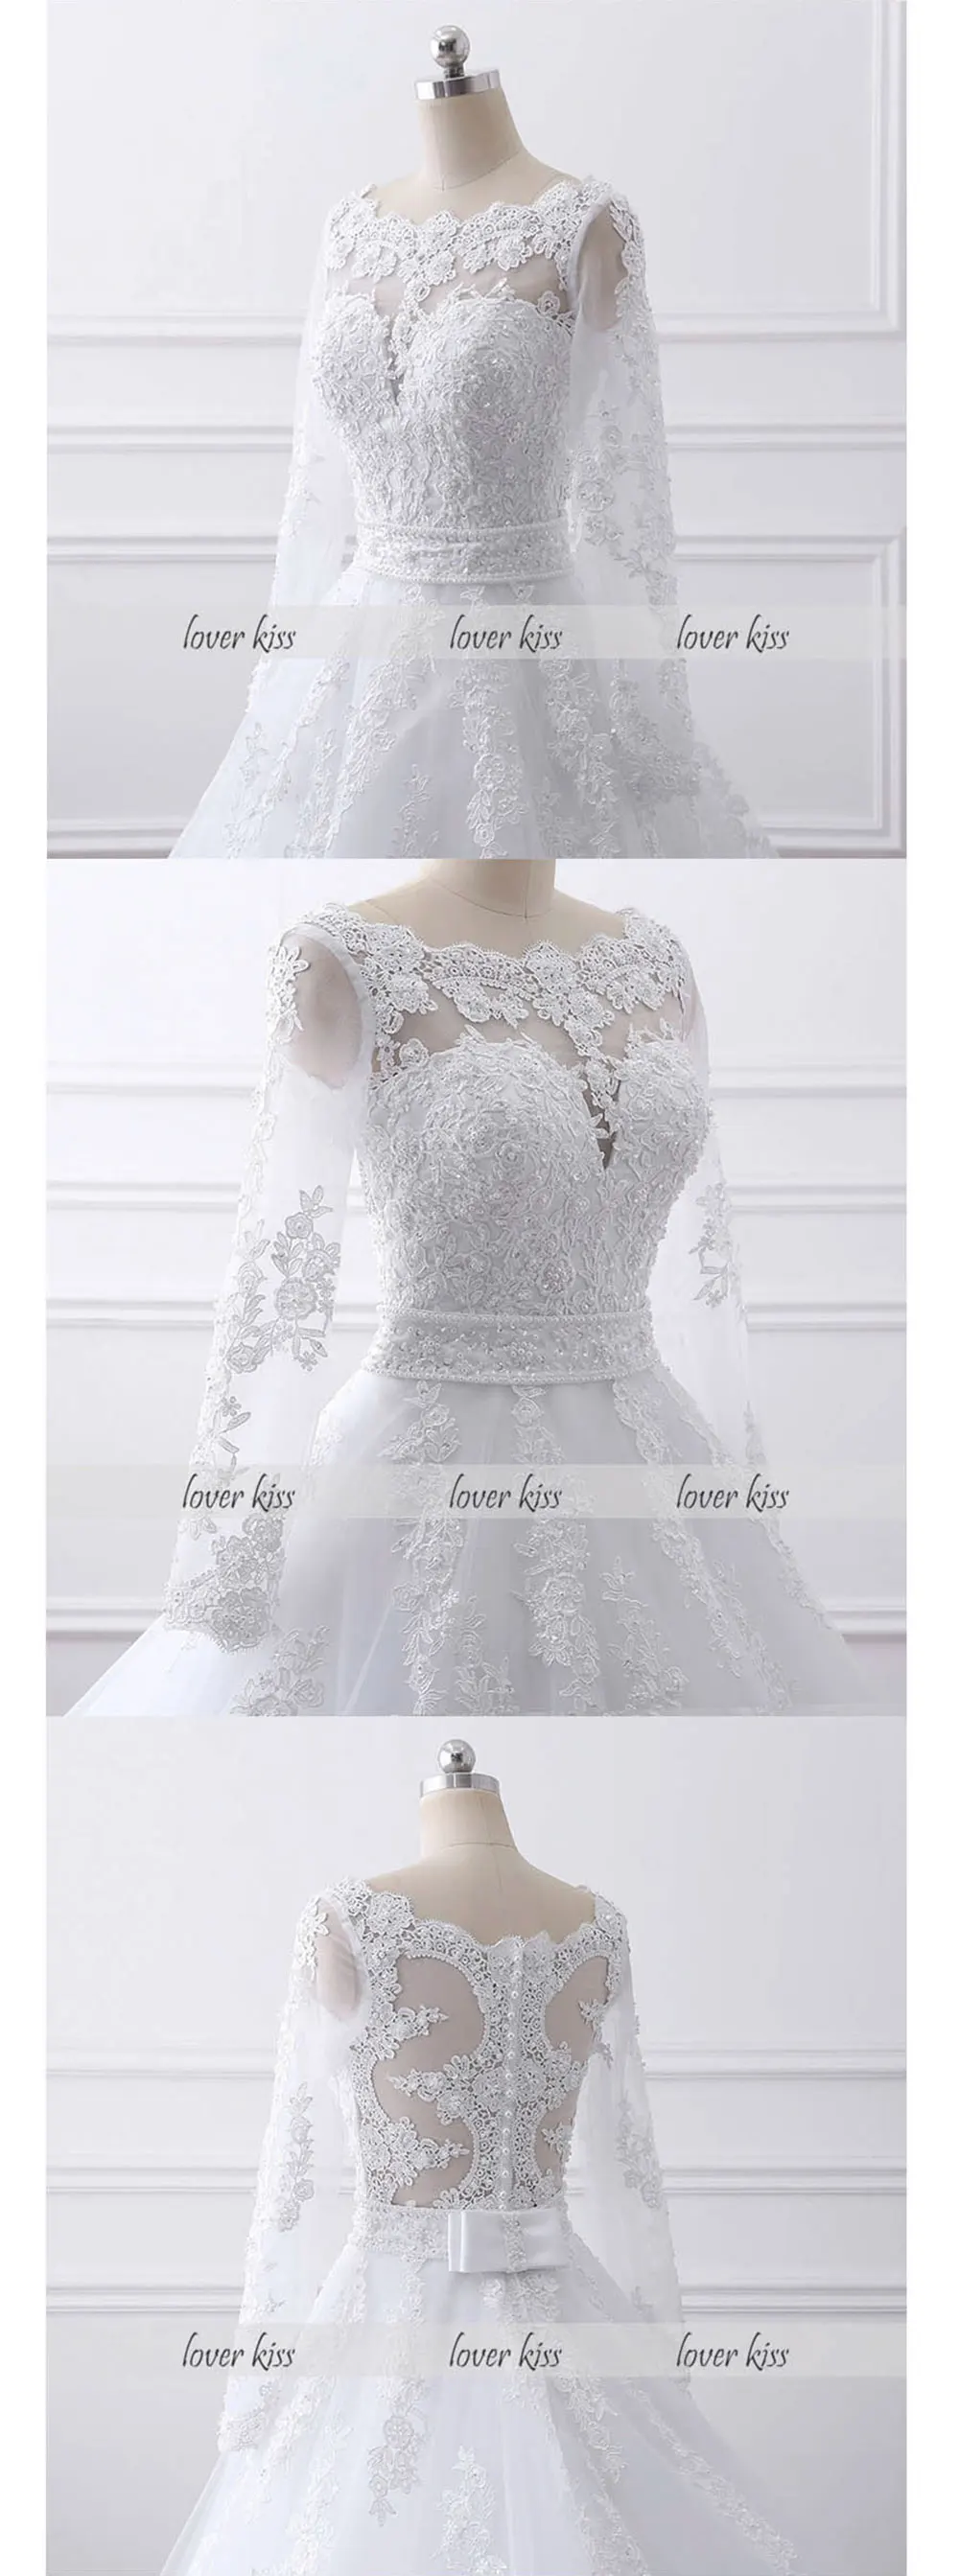 Lover Kiss Vestido de noiva жемчуг длинный рукав с бисером свадебное платье кружевные свадебные платья для невесты с бантом настоящий халат de Mariage